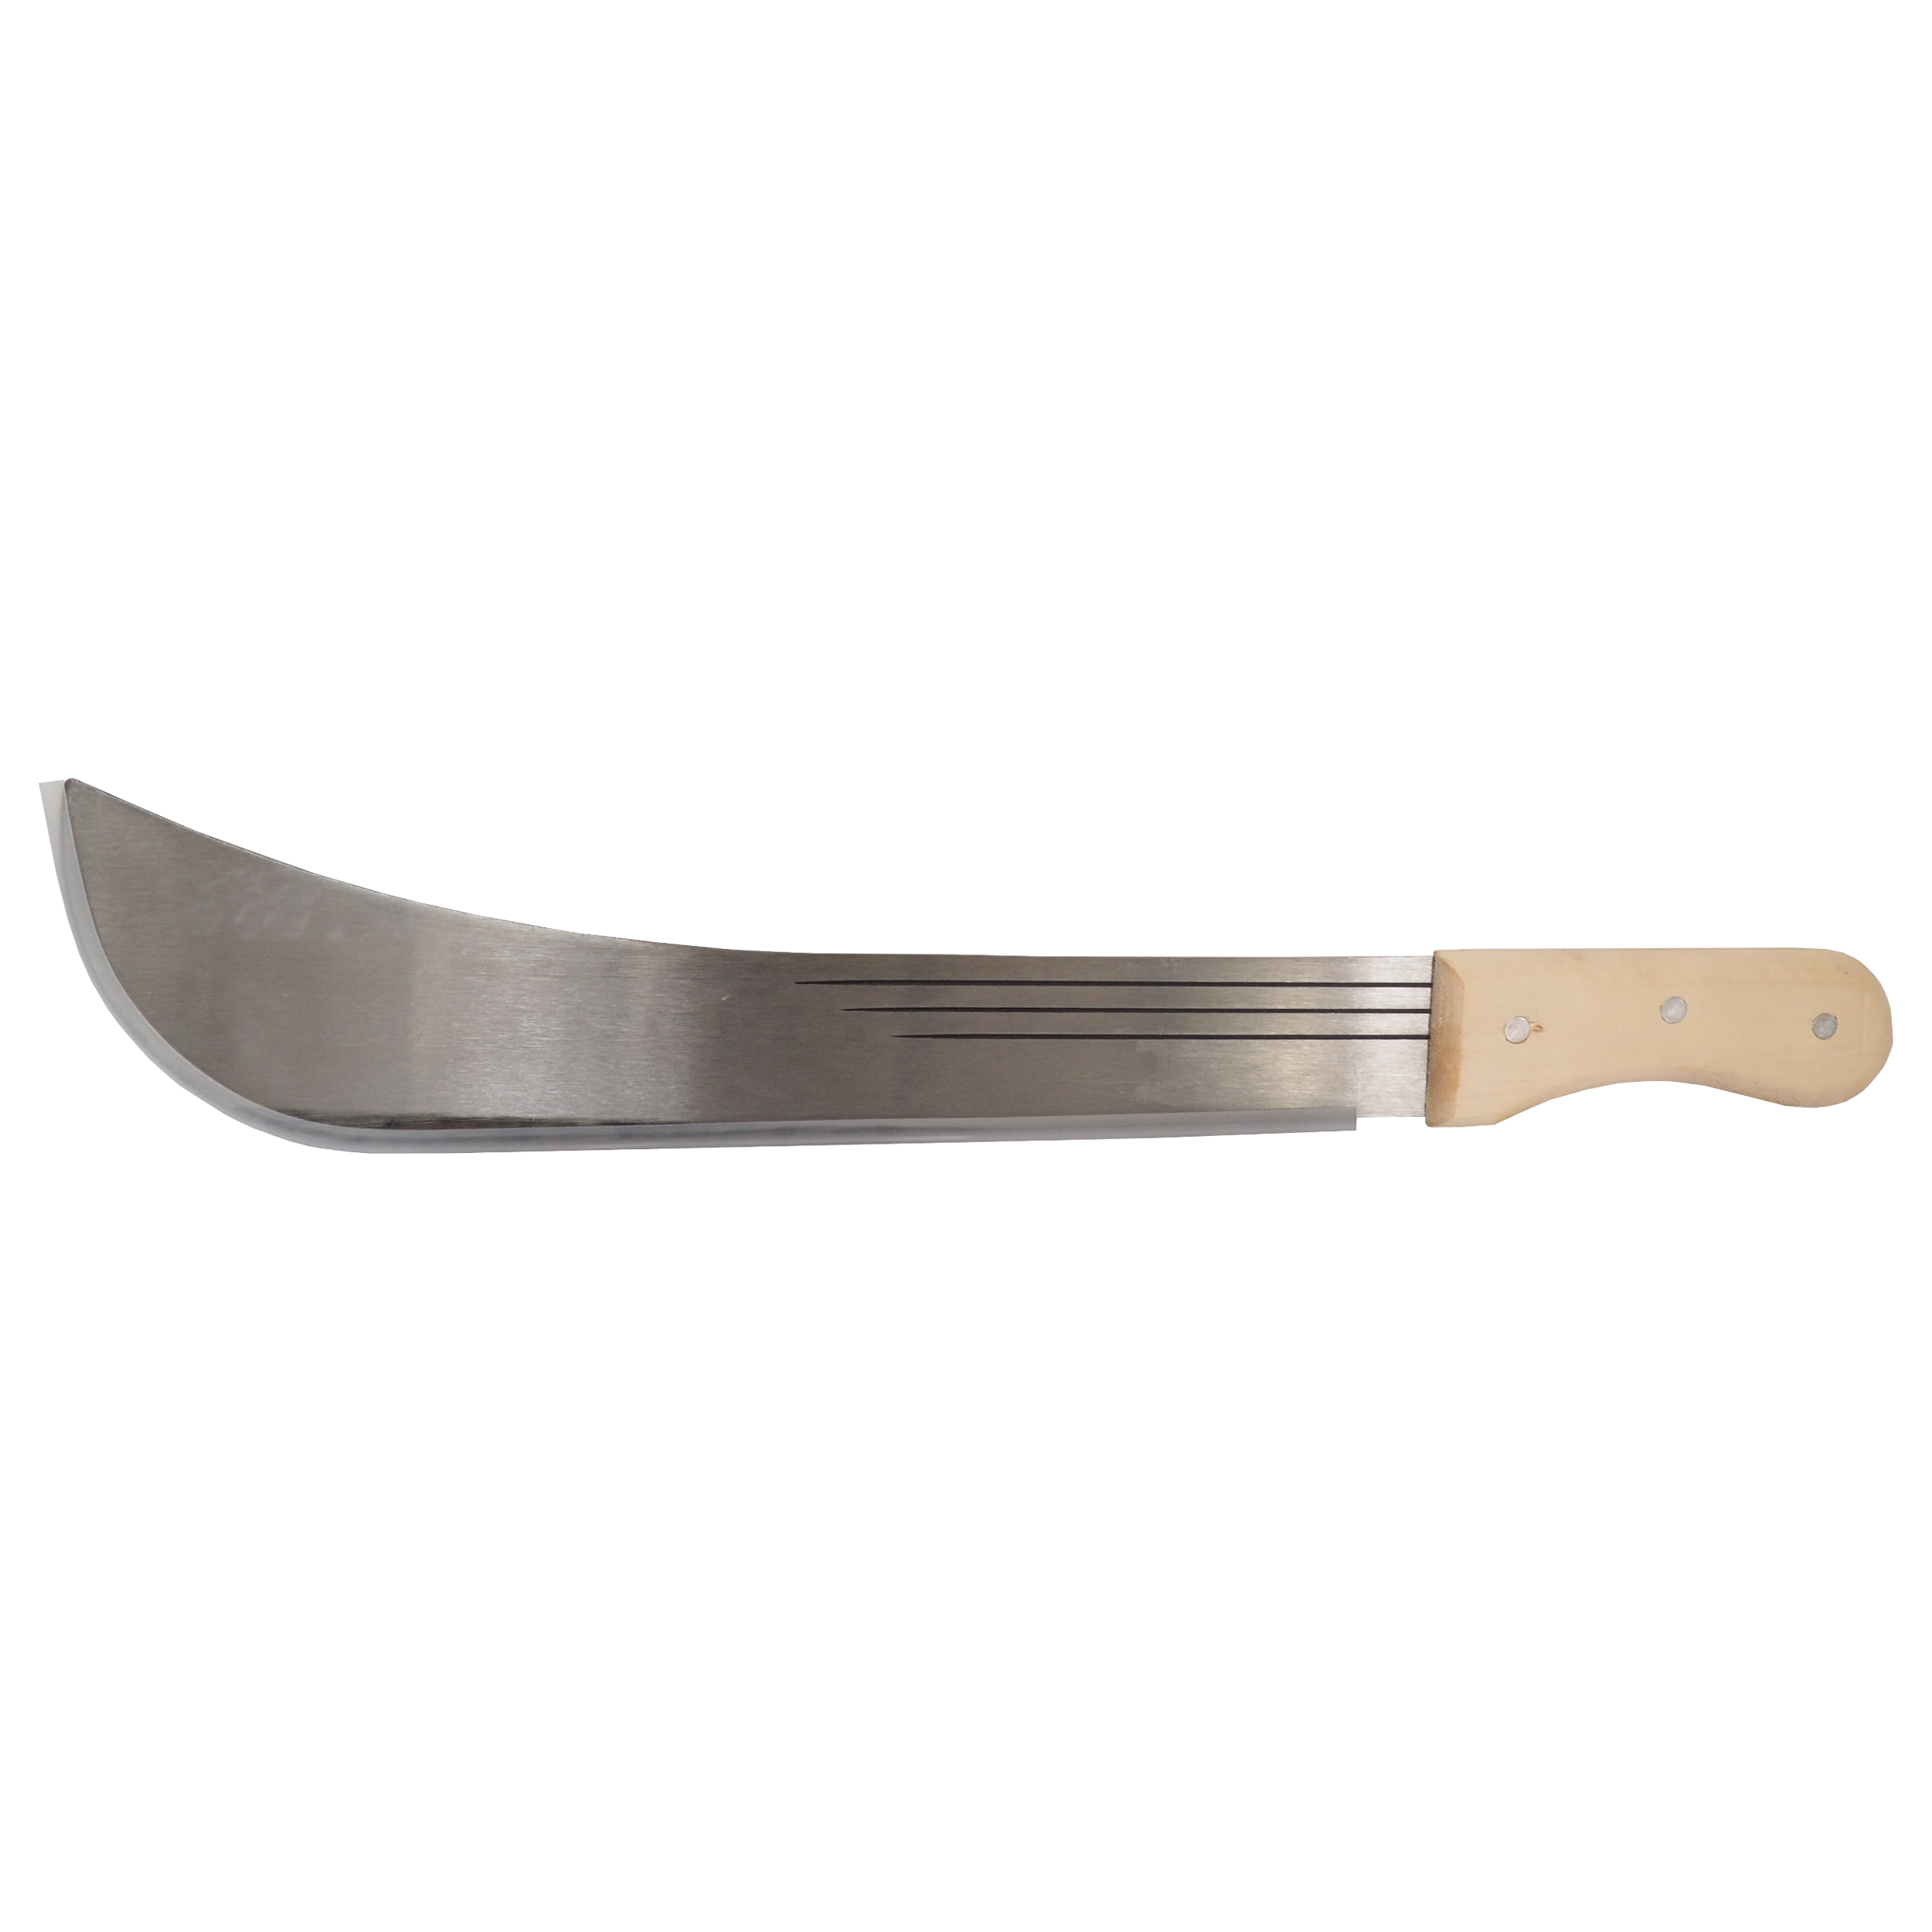 TOPTRADE mačeta ocelová, s dřevěnou rukojetí, 16“ čepel, 500 mm 0.54 Kg TOP Sklad4 309170 368